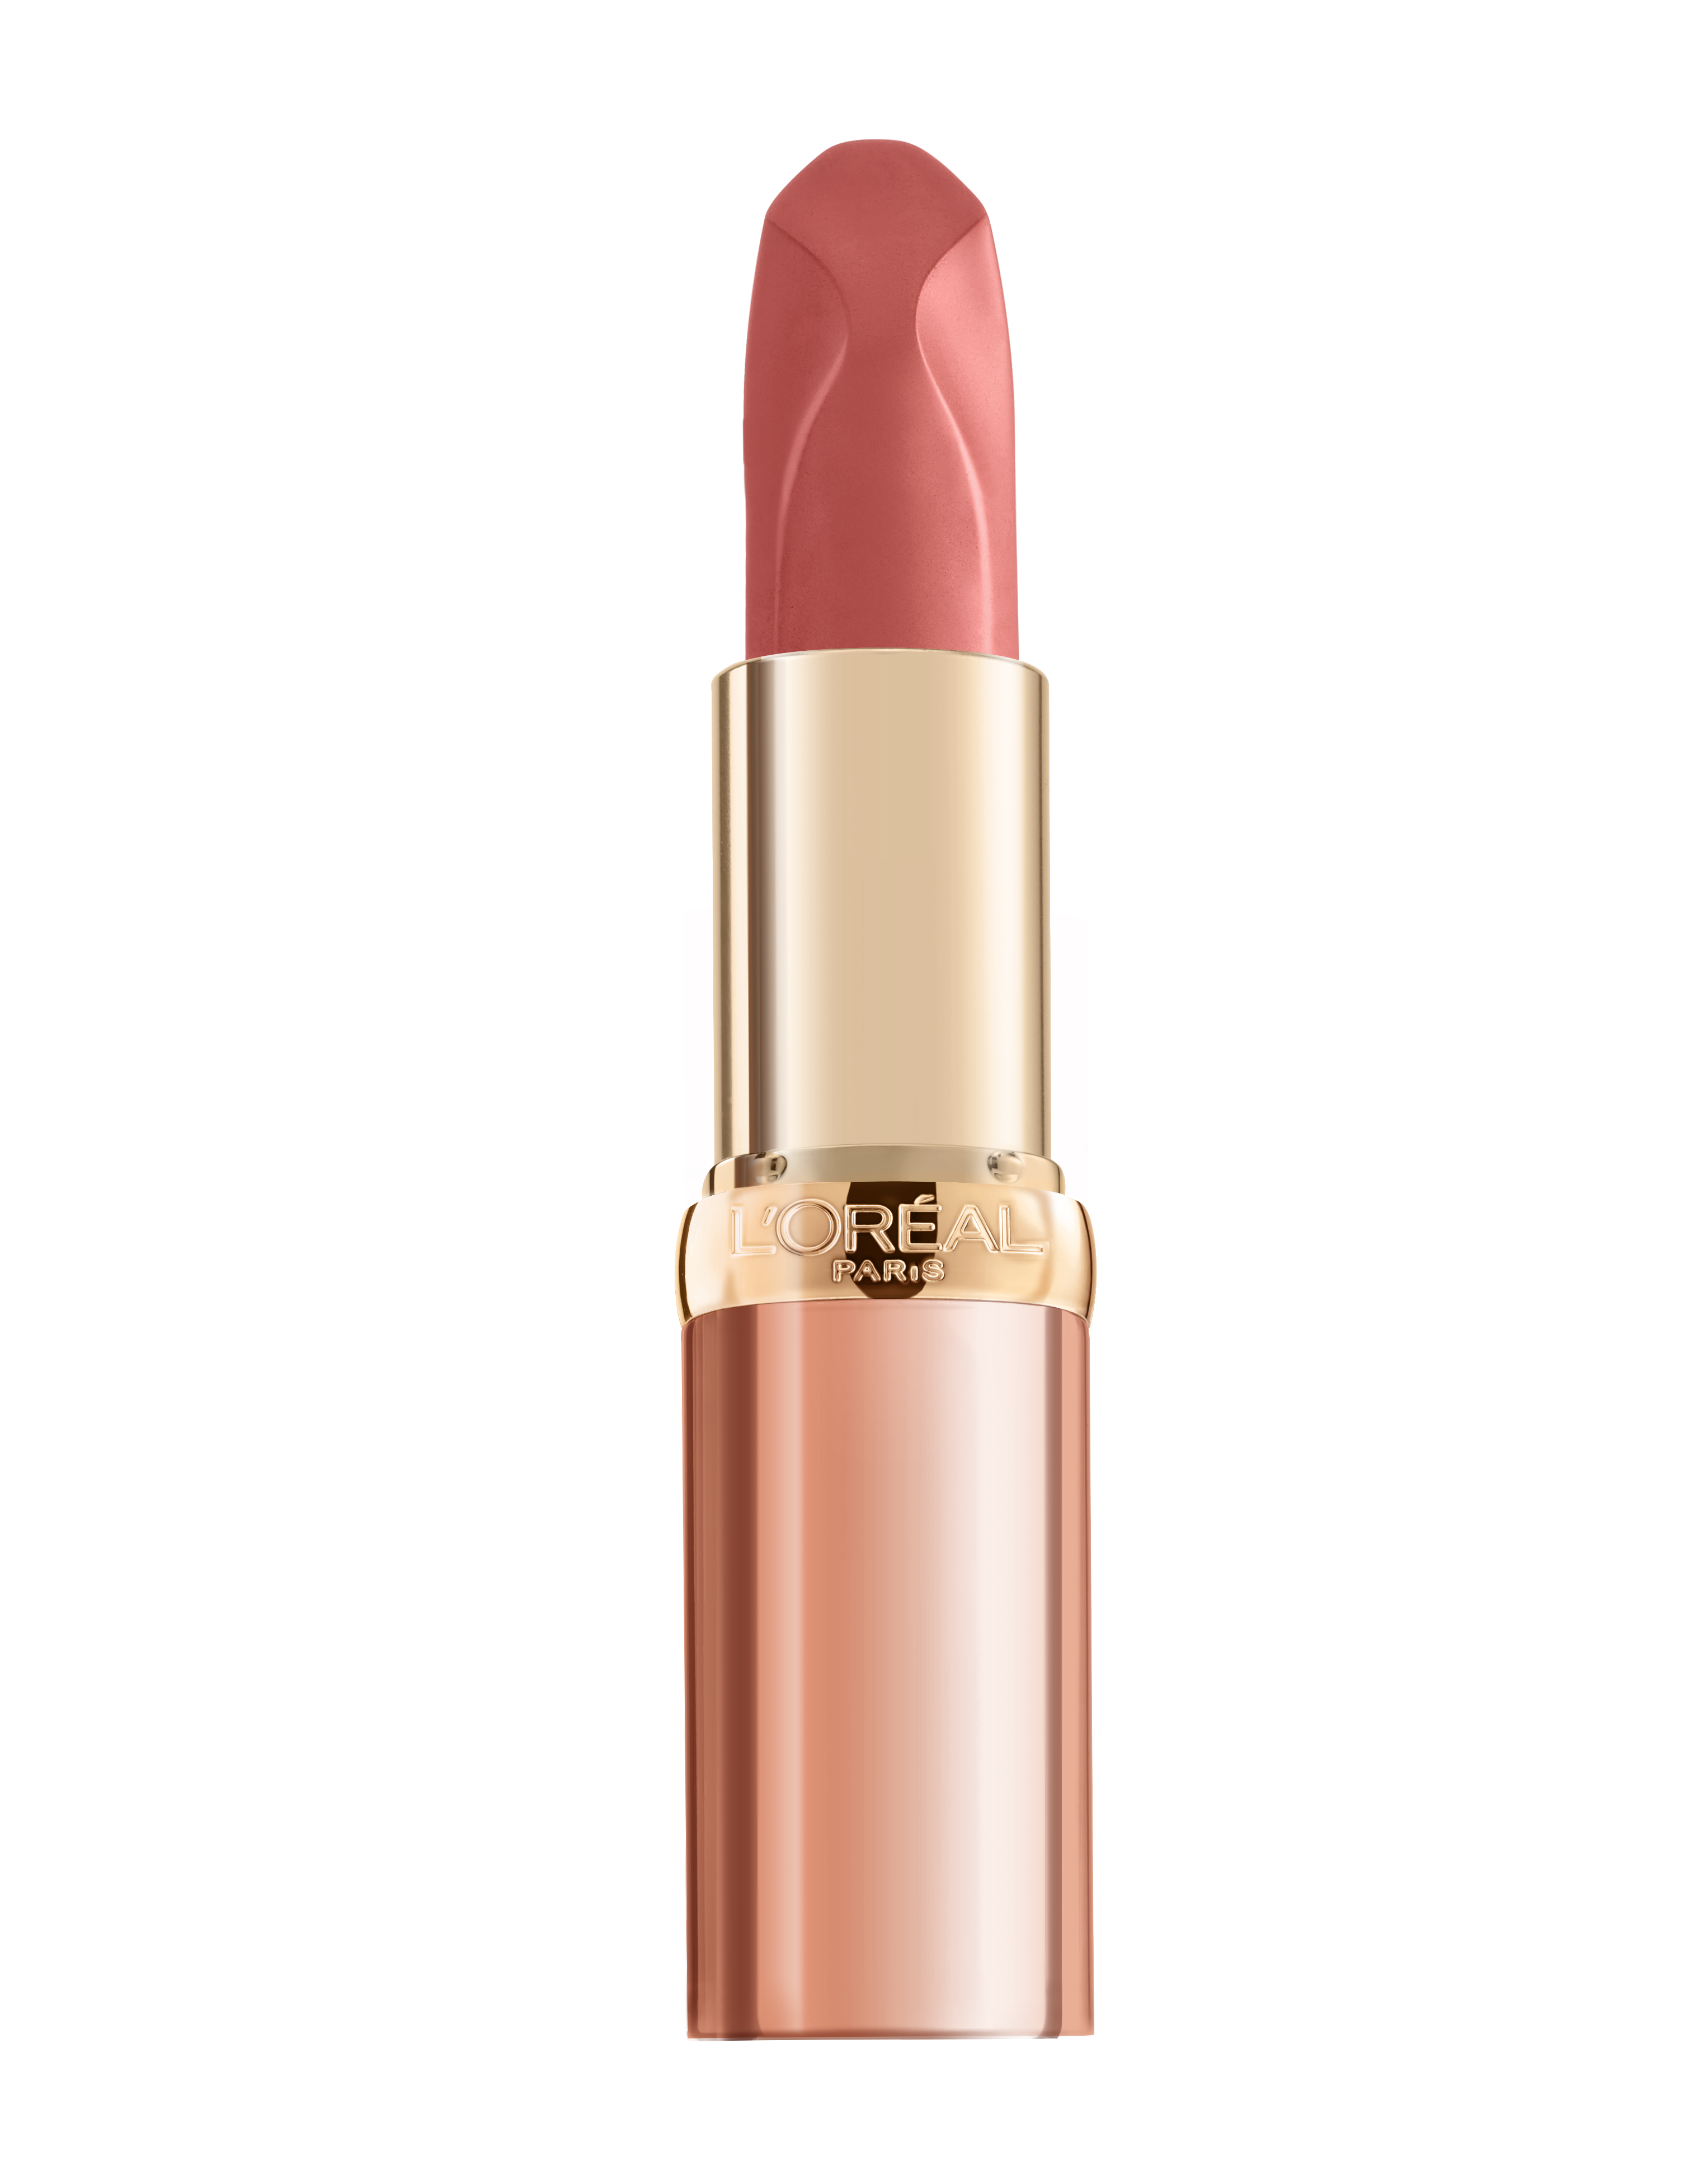 Помада для губ L'Oréal Paris Color Riche Nude Intense, відтінок 173, 28 г (AA207400) - фото 4